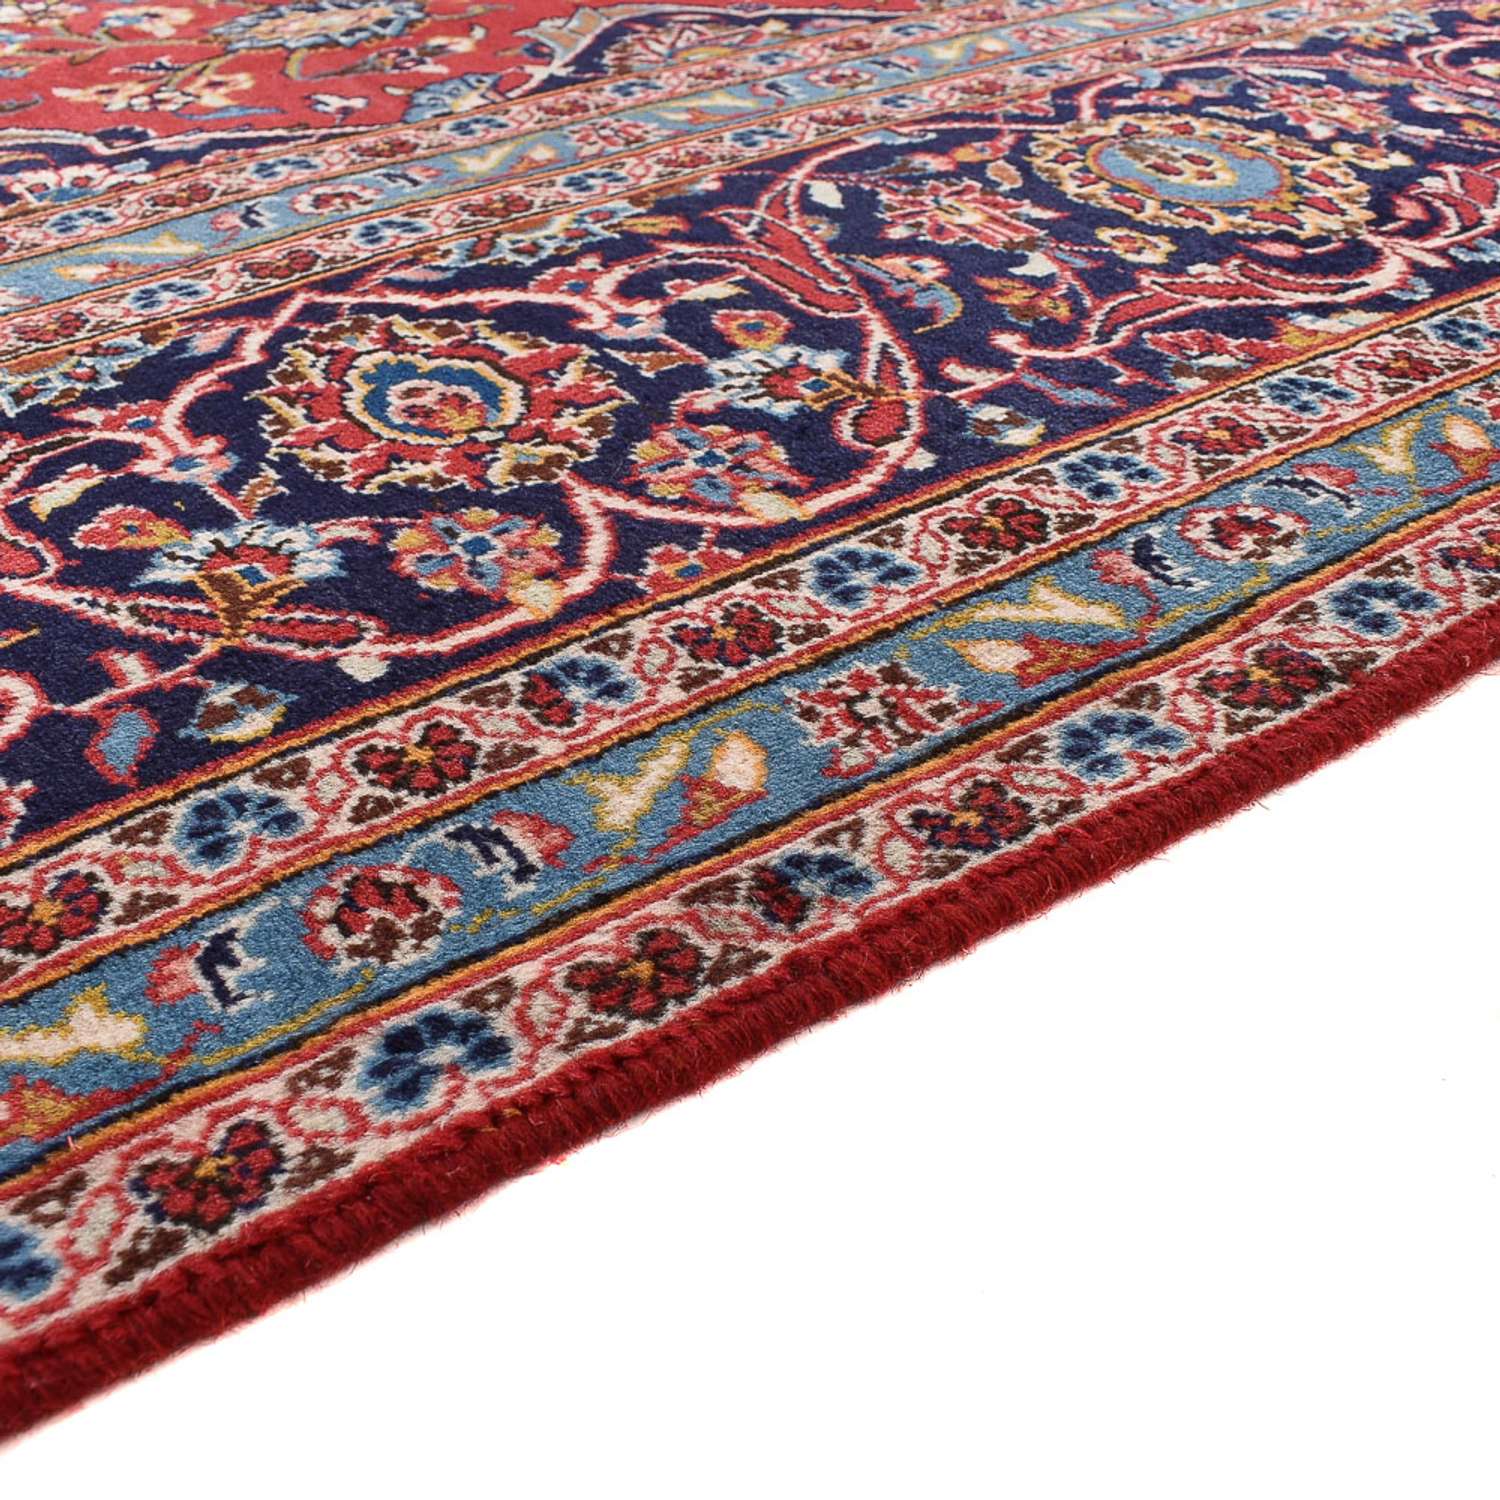 Perský koberec - Keshan - 395 x 286 cm - červená